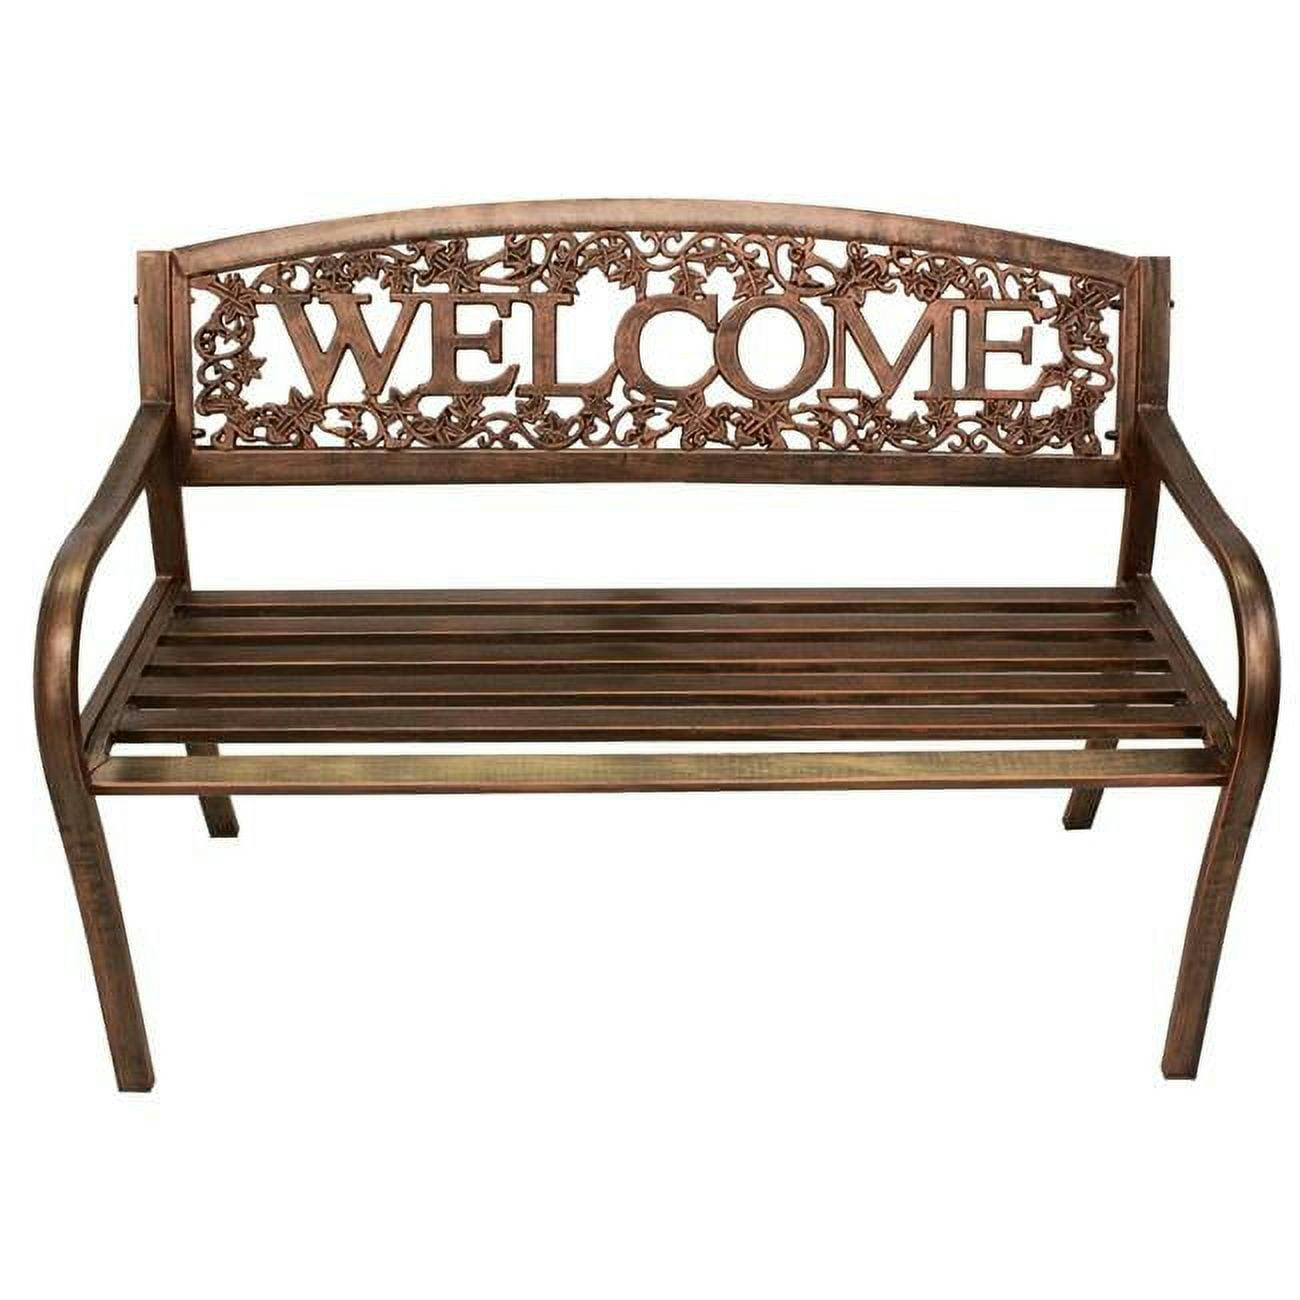 Bronze Steel 50.5" Outdoor Welcome Bench with Ivy Design